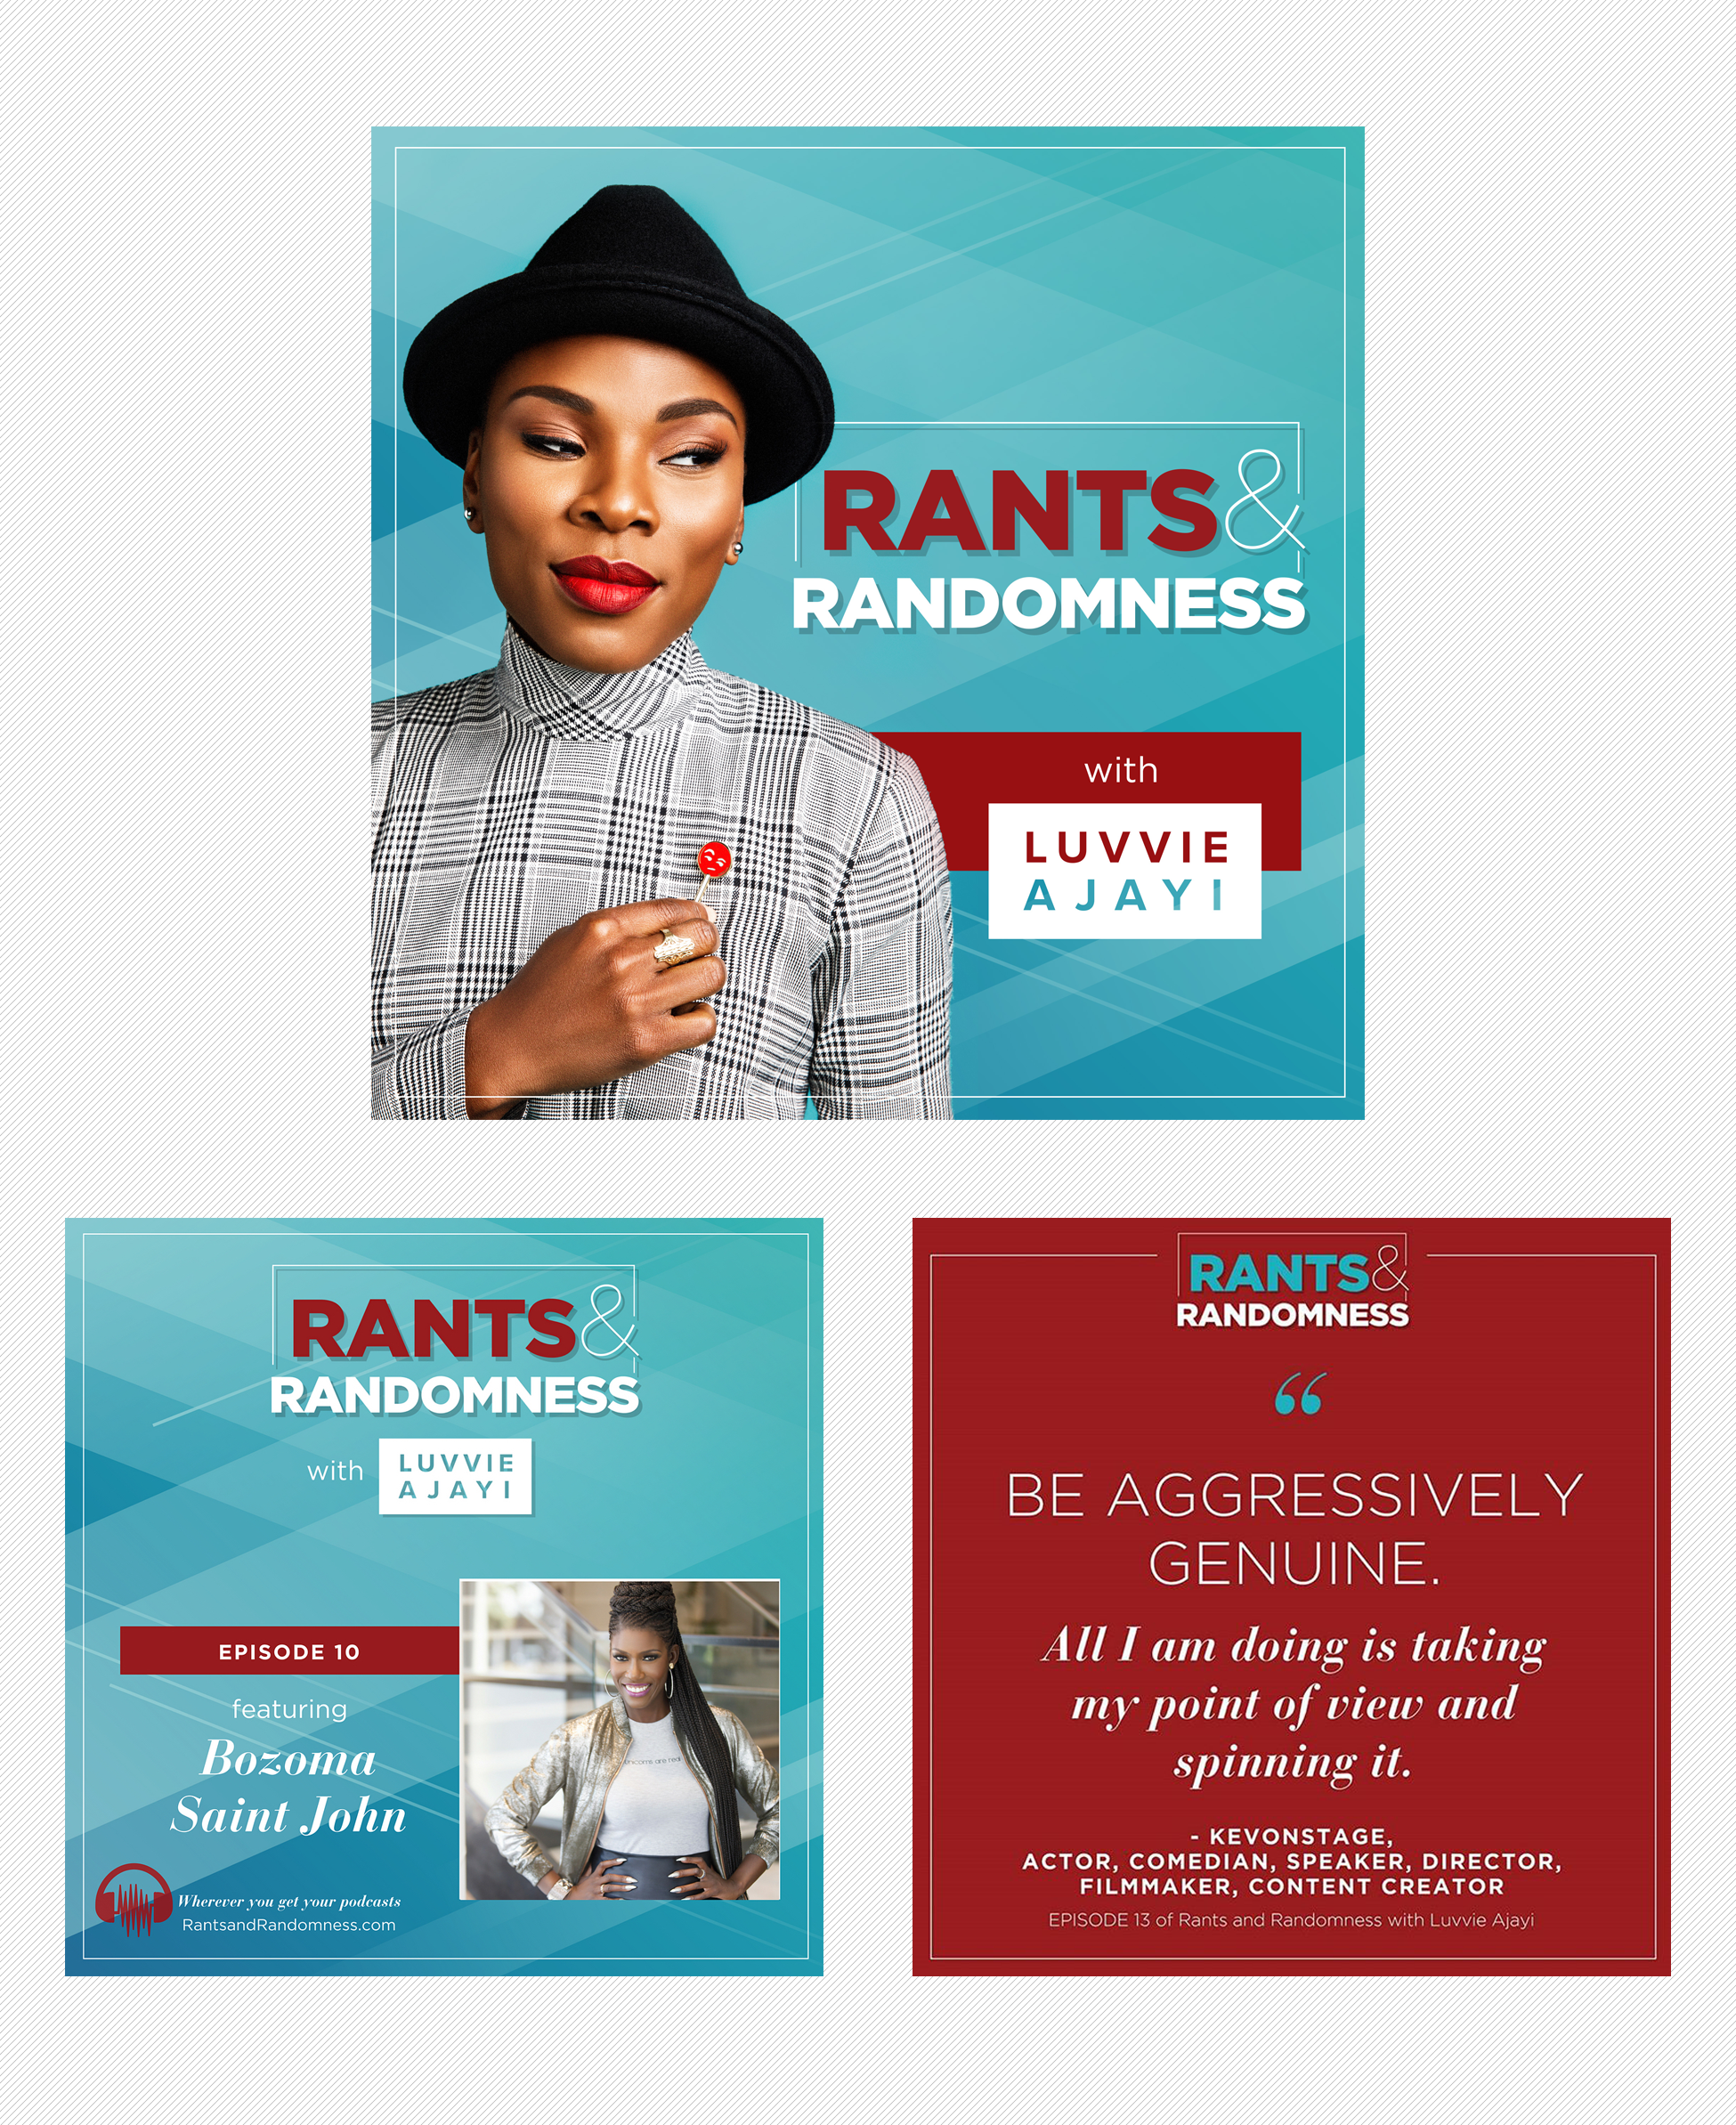 Podcast branding design for Luvvie Ajayi's Rants & Randomness podcast